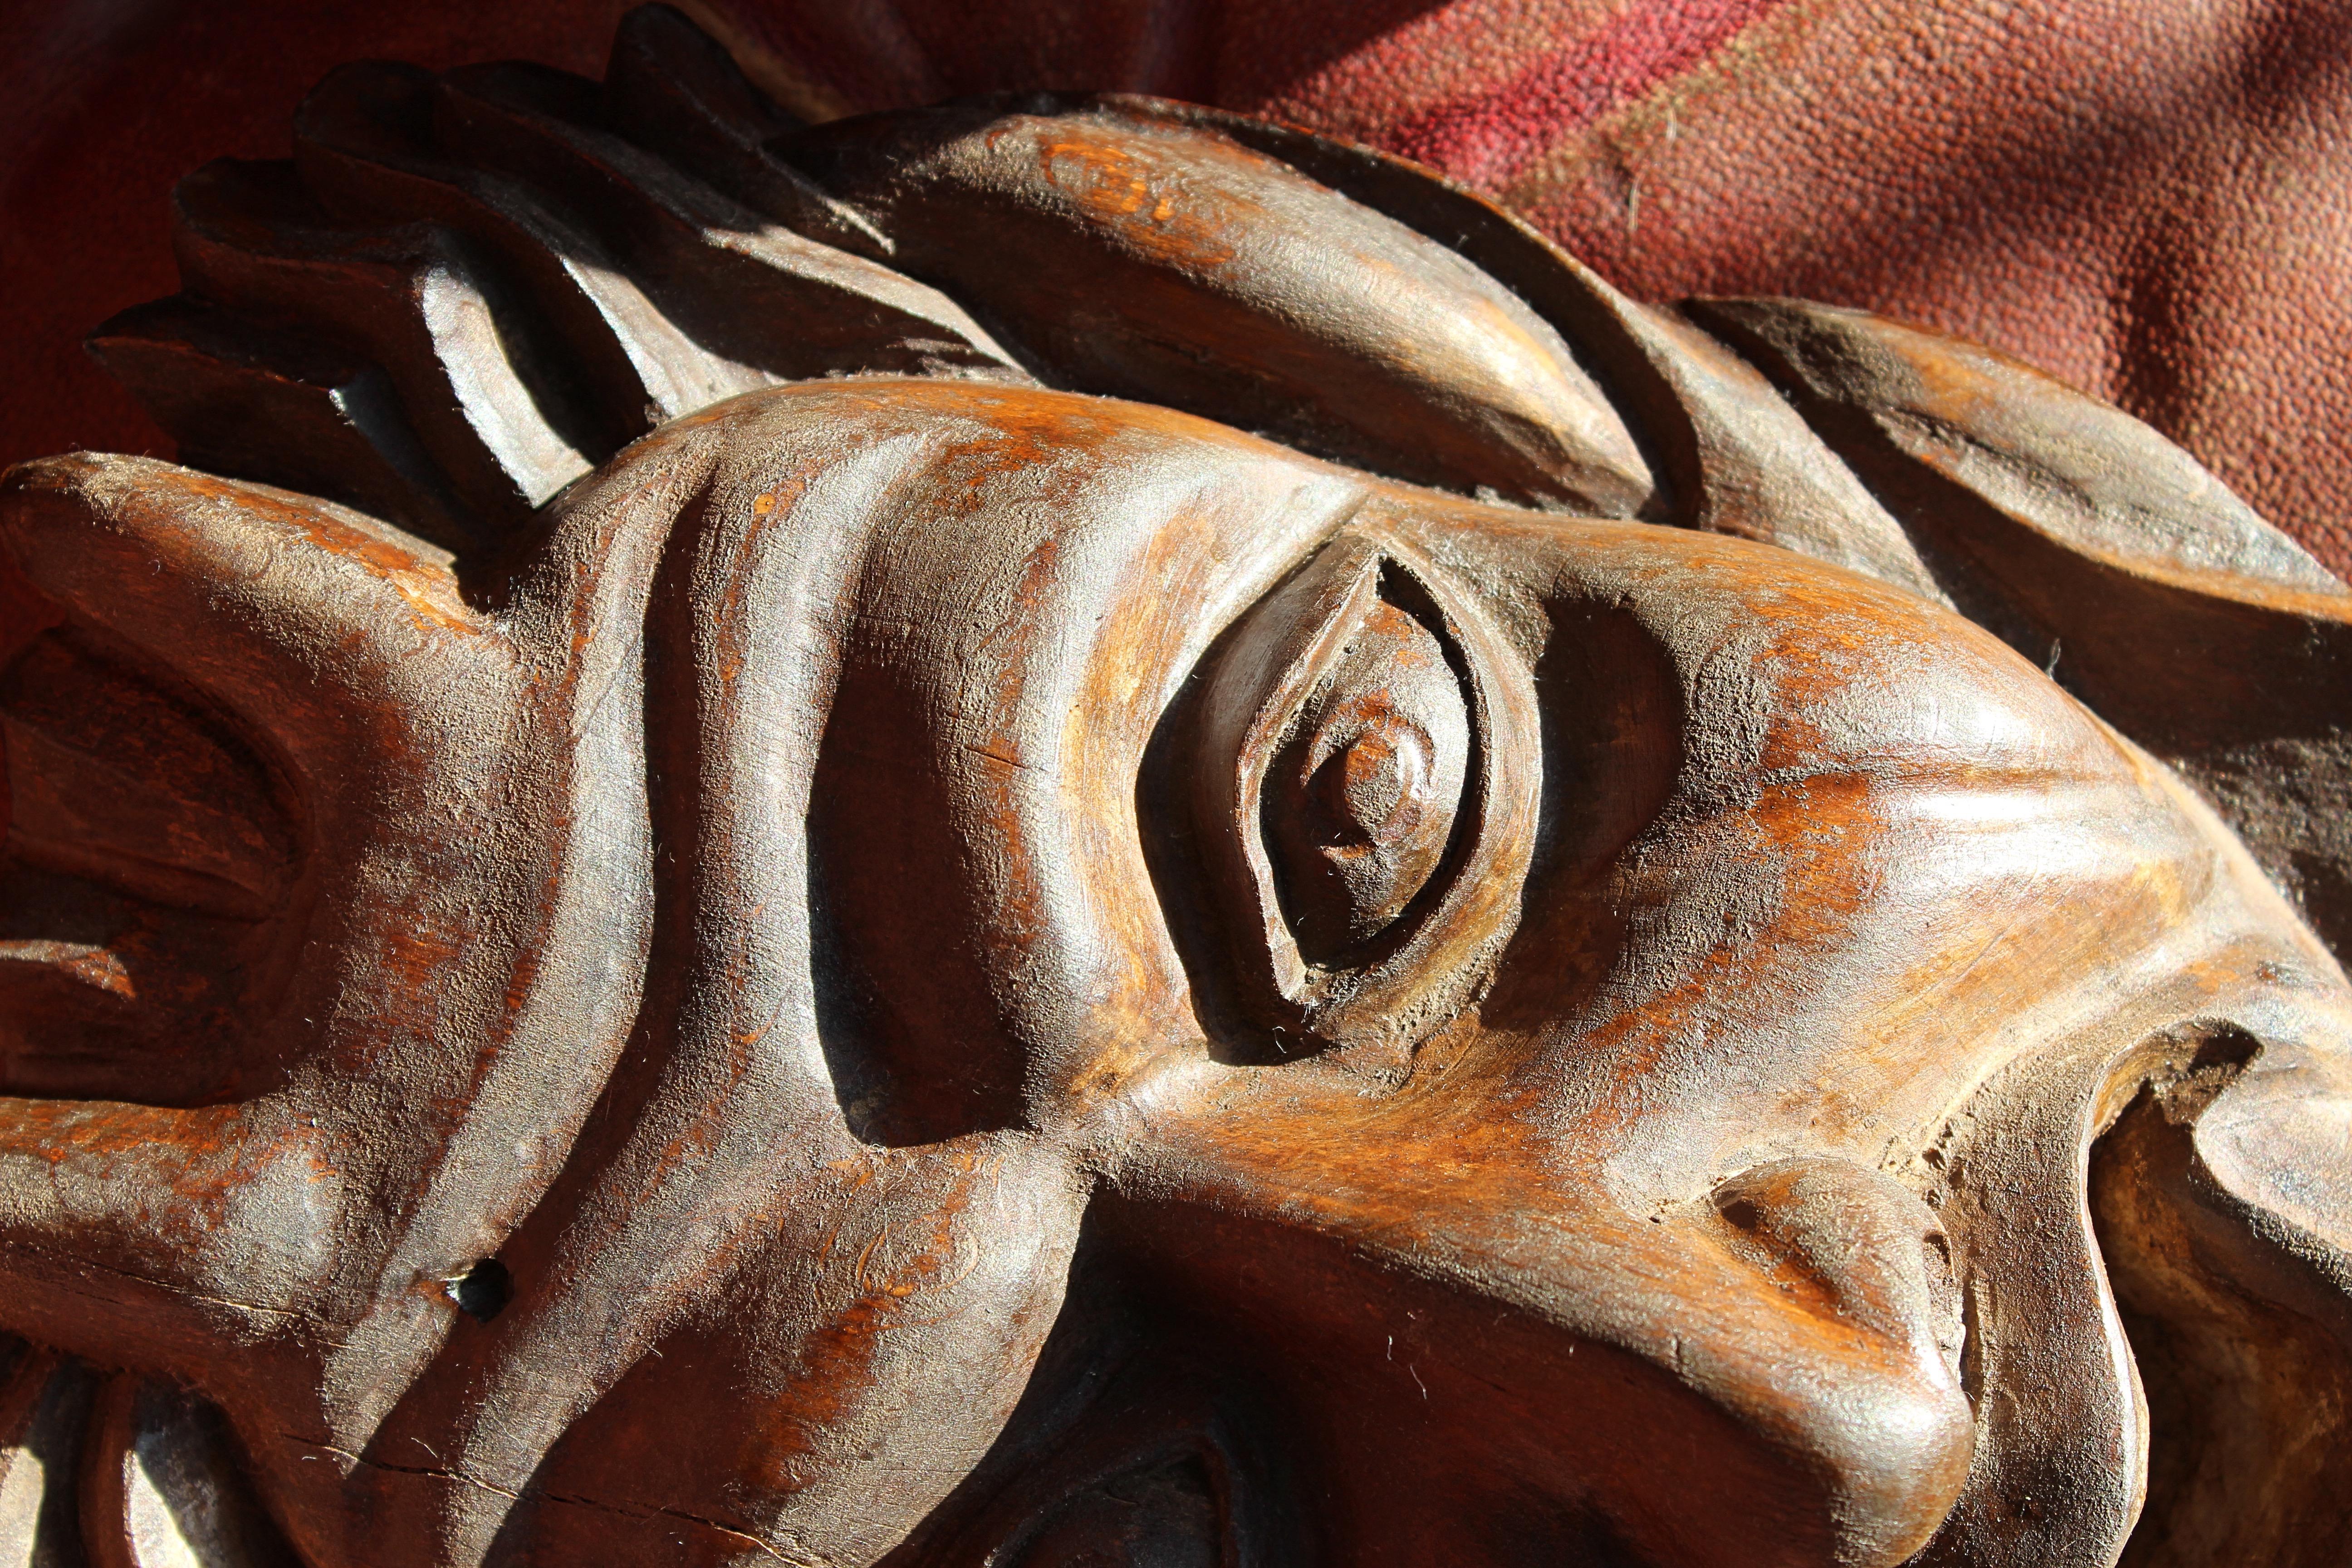 Masque de diable en bois sculpté et teinté, d'aspect plutôt insolent, datant du début du siècle. 

Peut-être une référence au masque Hannya Noh utilisé dans le théâtre japonais.

Décoloration liée à l'âge, vers 1890/1910

27,5 cm de hauteur 
20,5 cm